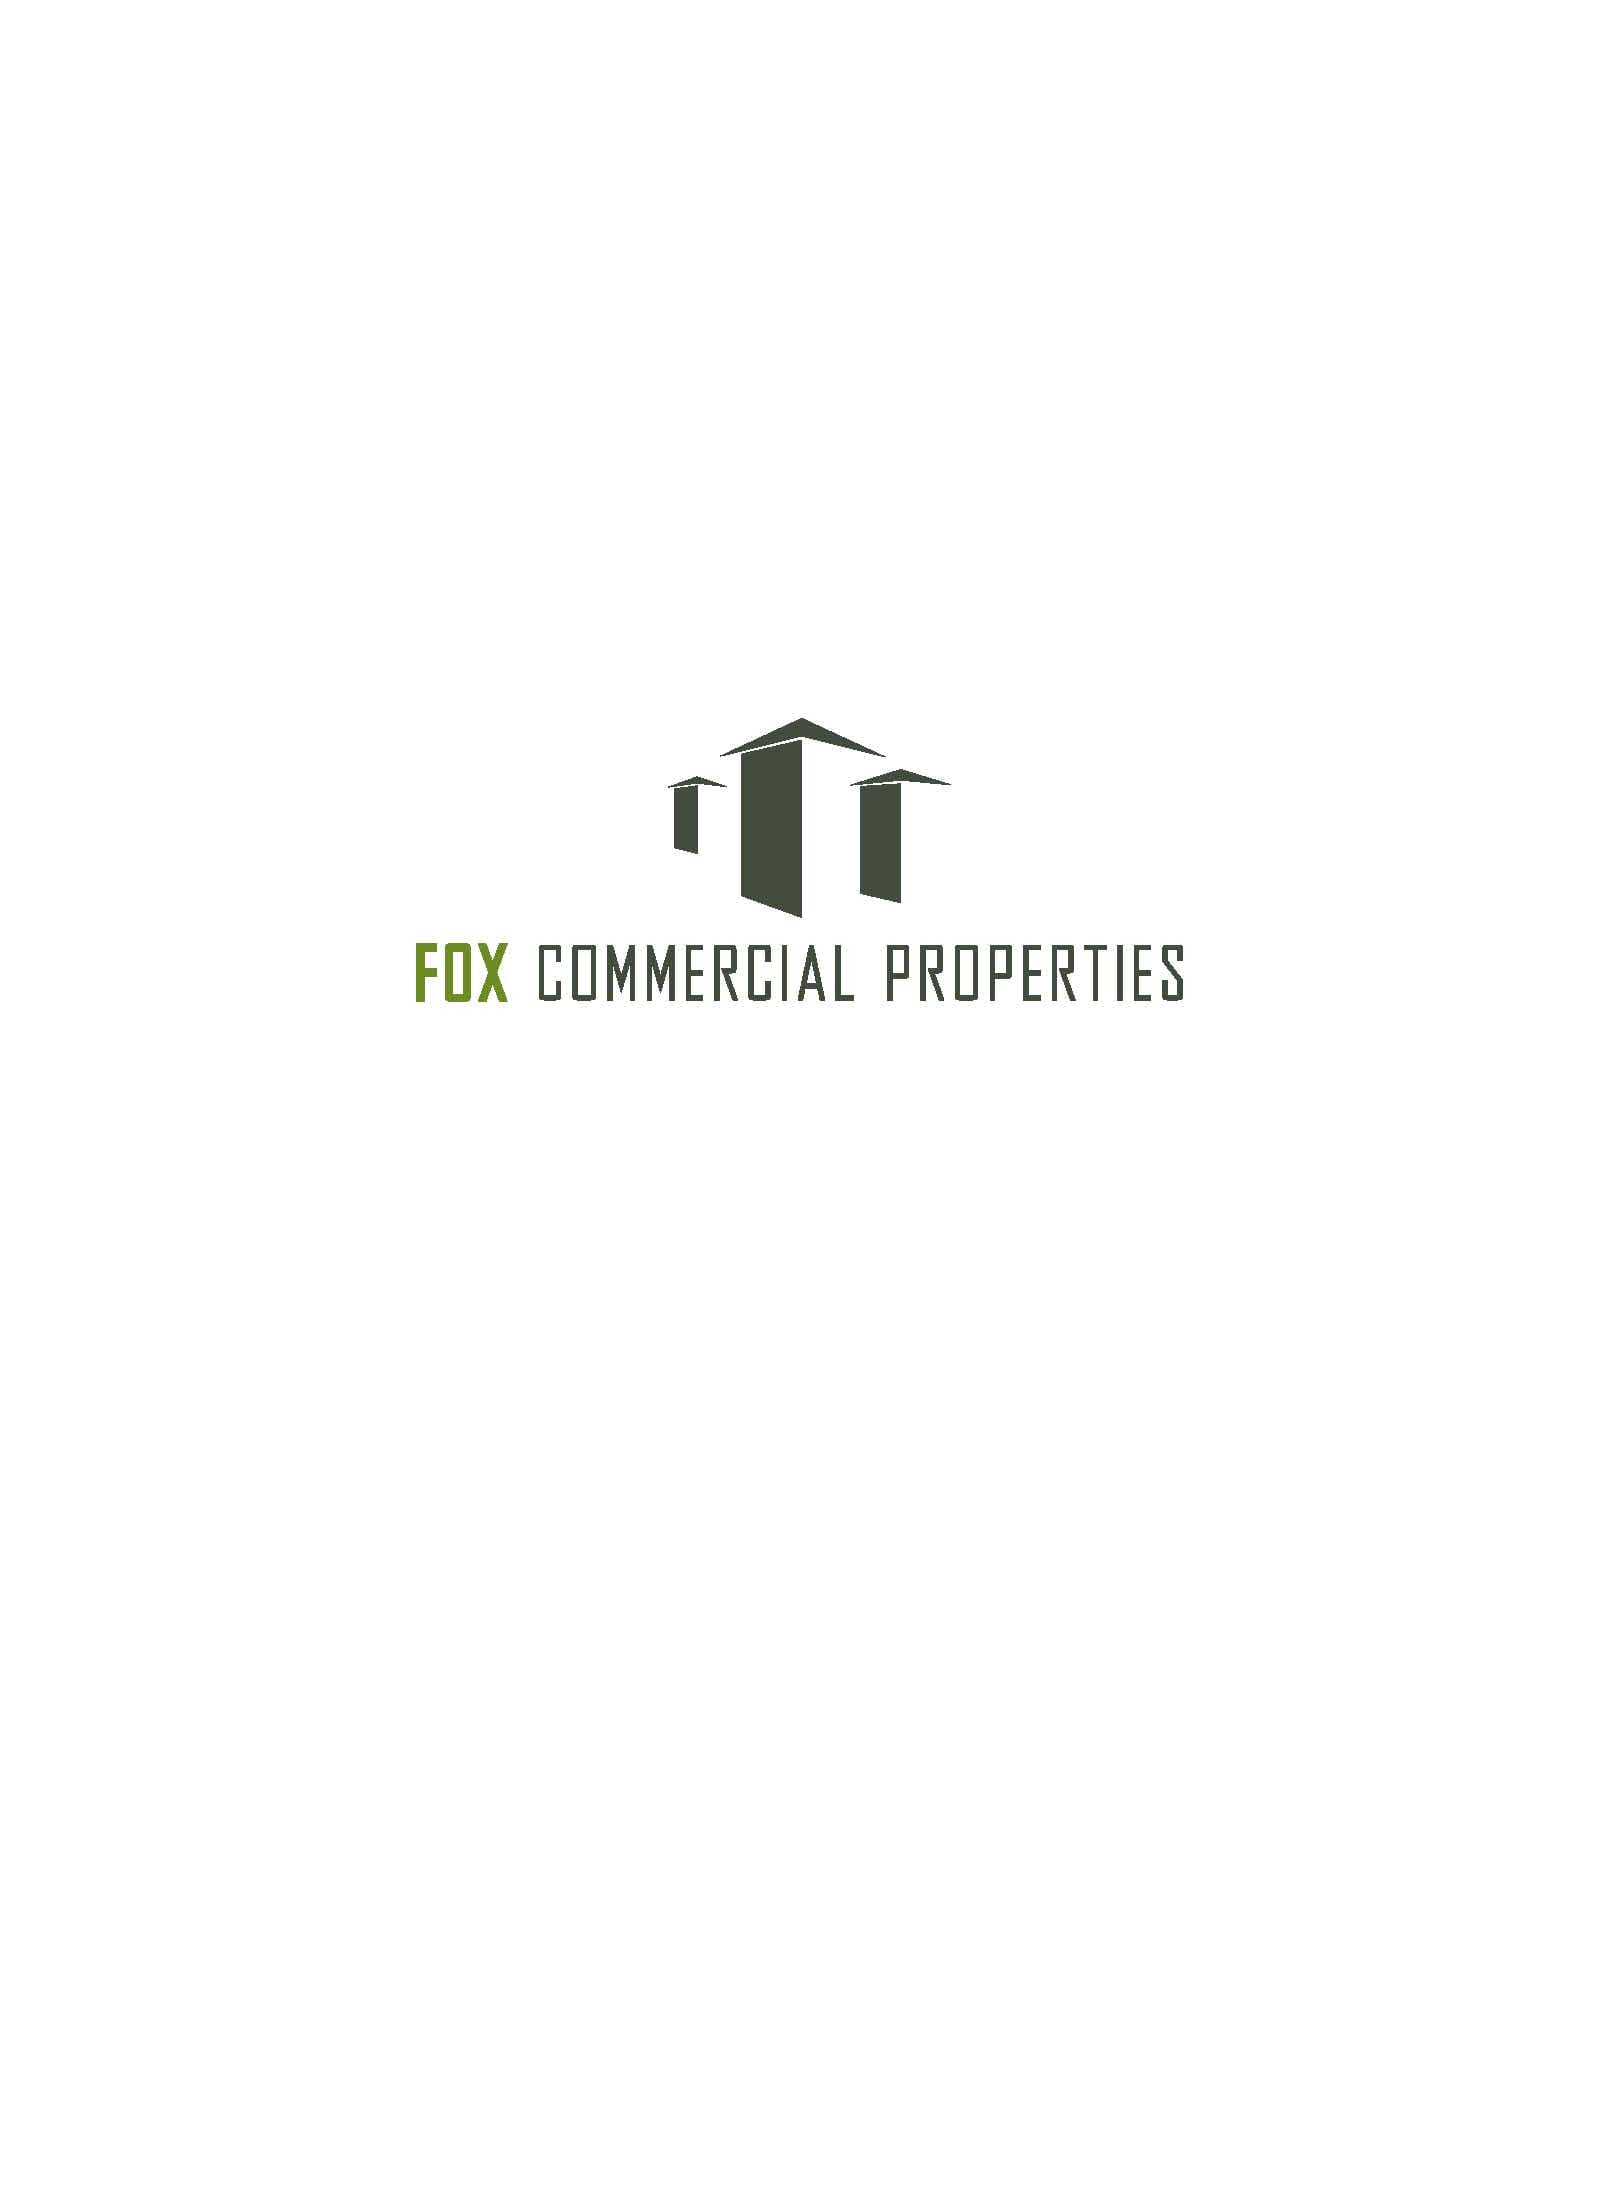 No Fox Logo - Fox Commercial Properties logo no tagline Green South Carolina